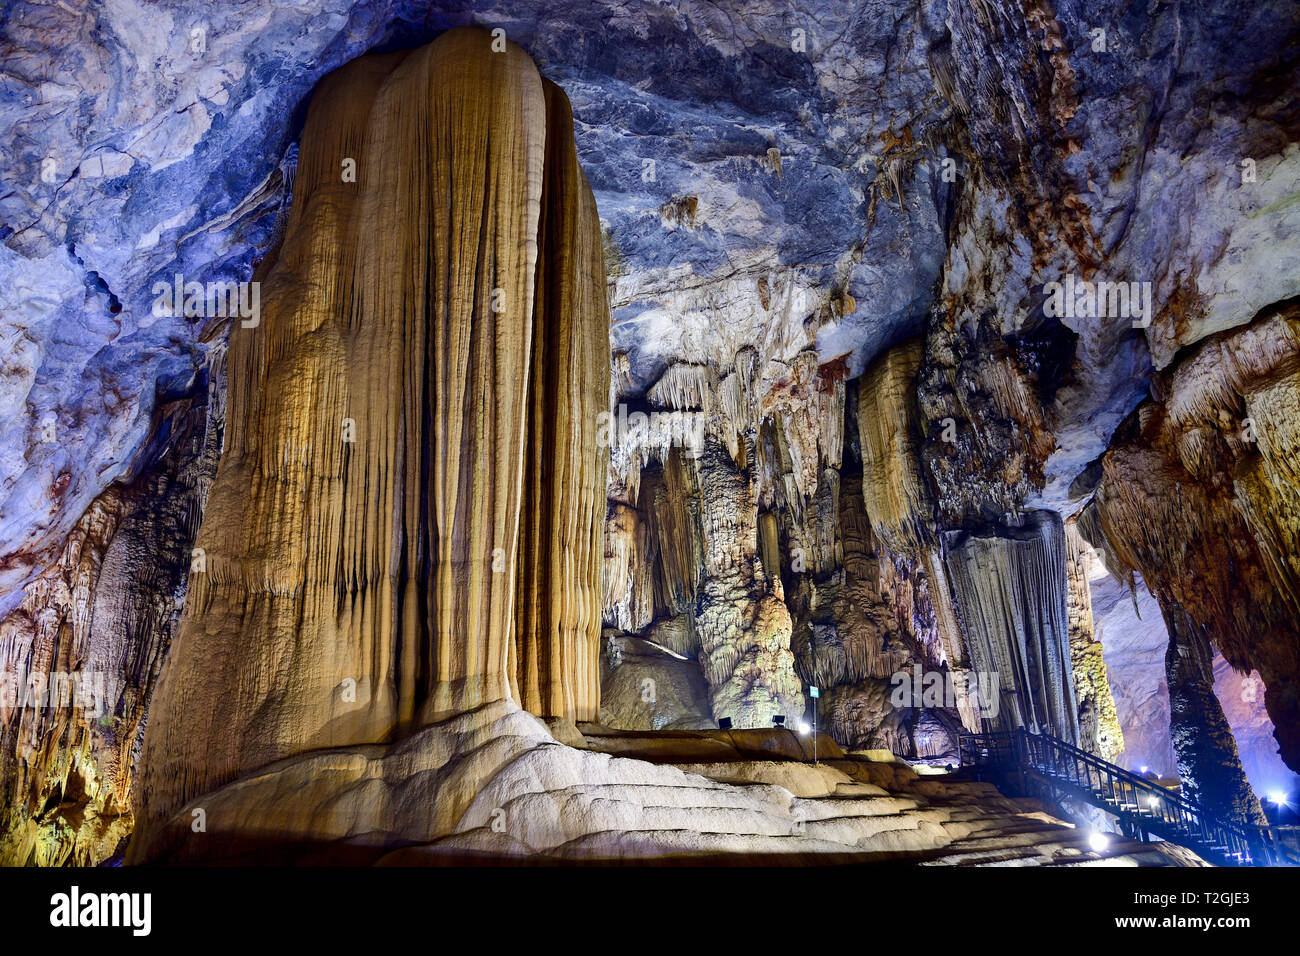 Formes géologiques étonnantes au Paradis près de la grotte de Phong Nha, Vietnam. Grotte calcaire recouverte de stalactites et stalagmites. Banque D'Images